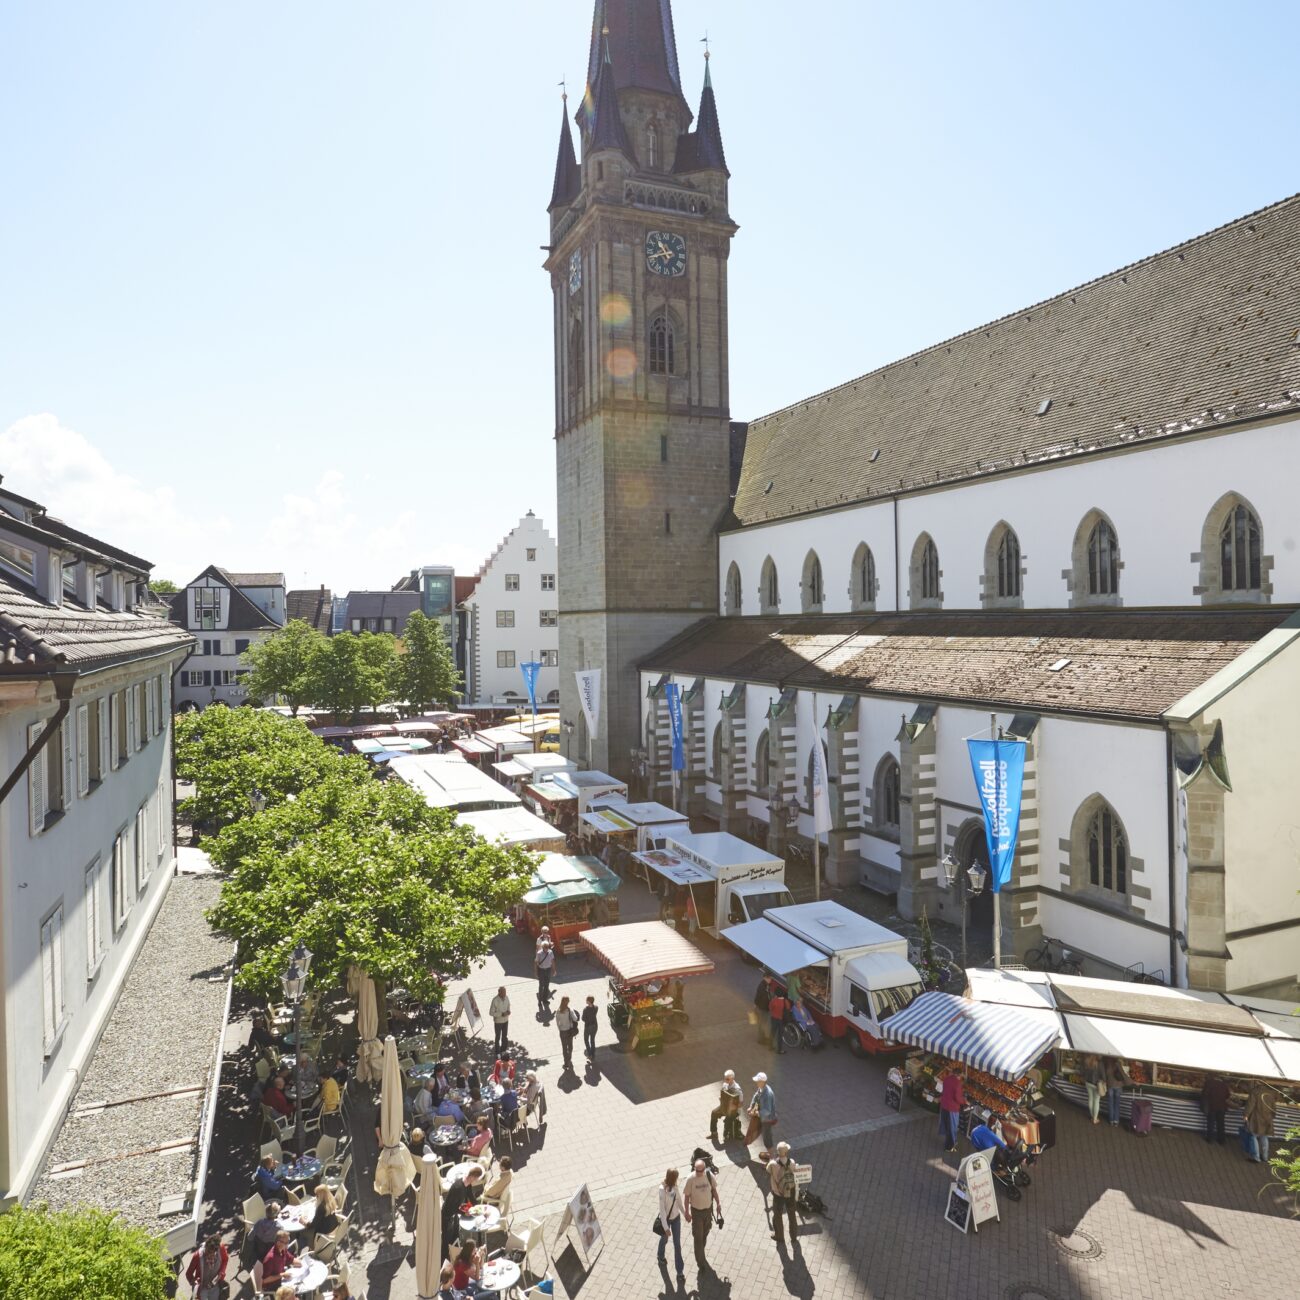 Radolfzeller Wochenmarkt auf dem Marktplatz vor dem Münster